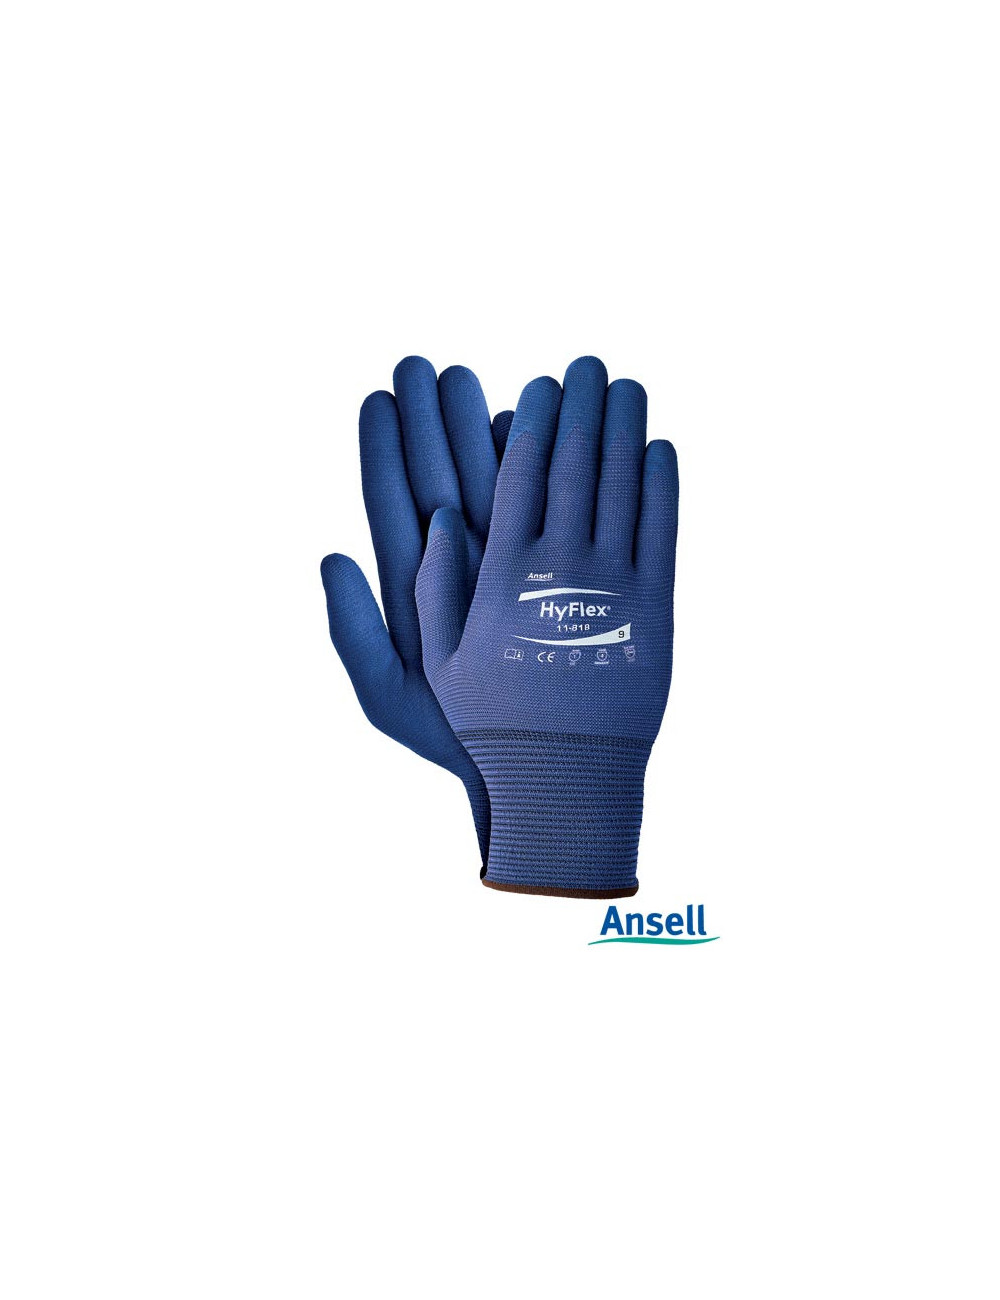 Rahyflex11-818 GG Schutzhandschuhe marineblau Ansell